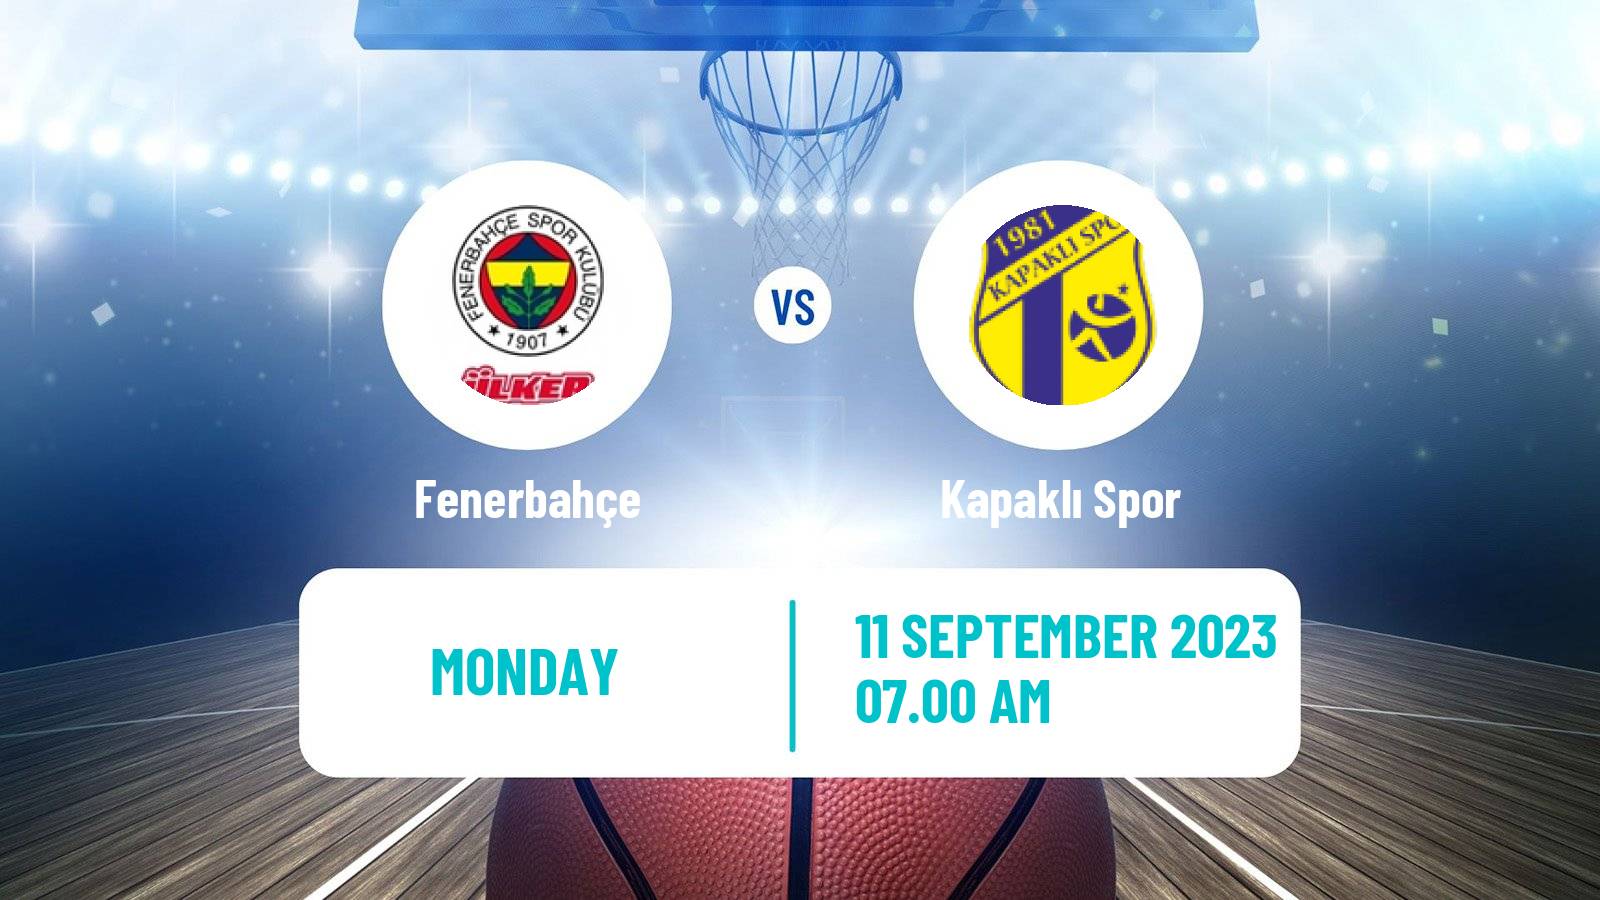 Basketball Club Friendly Basketball Fenerbahçe - Kapaklı Spor